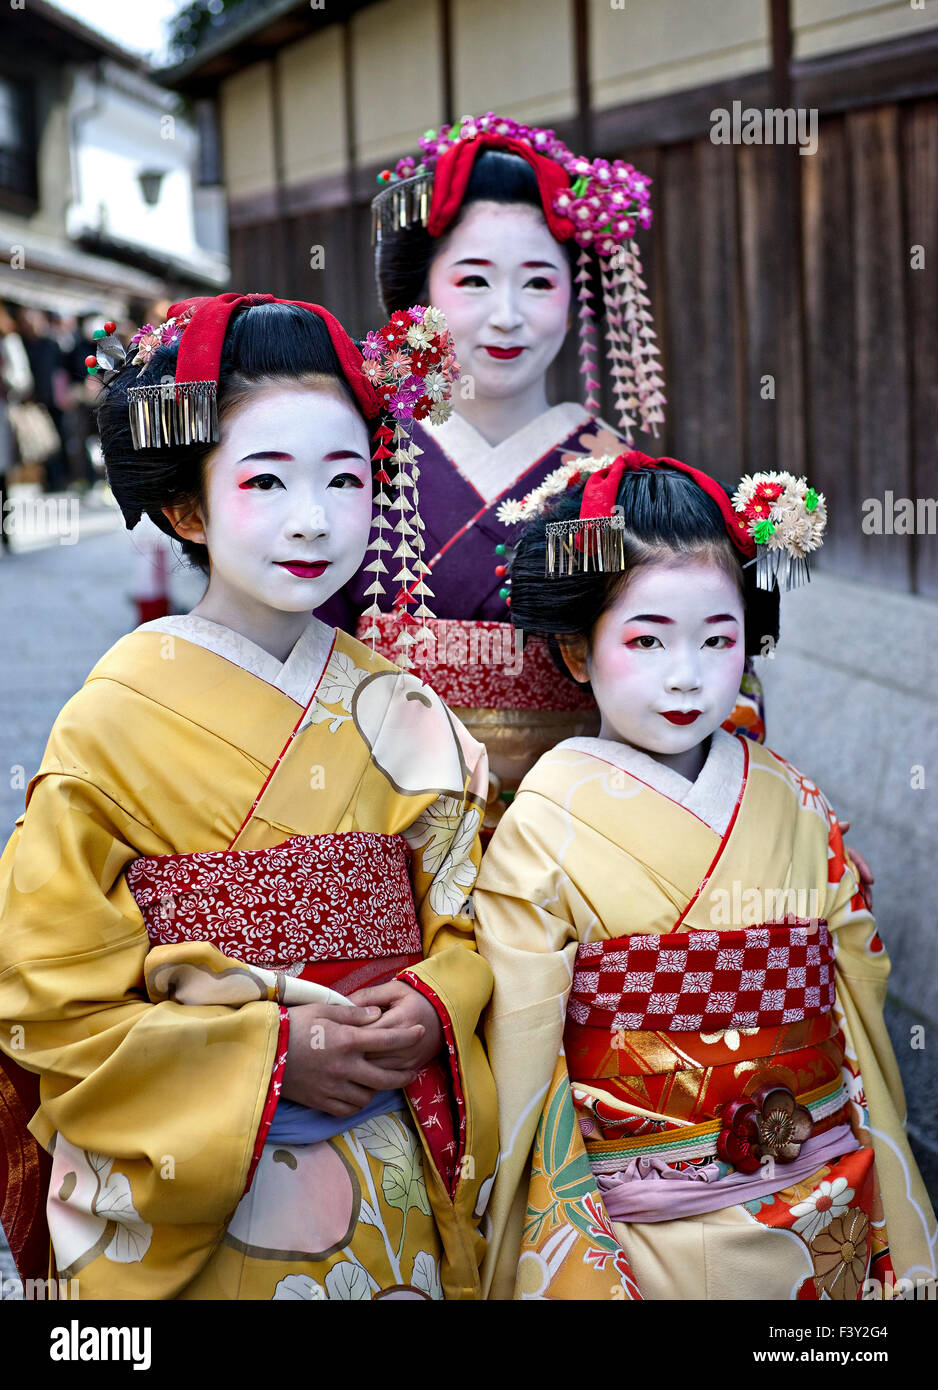 La isla de Japón, Honshu, Kansai, Kyoto, jóvenes que buscan como Geishas. Foto de stock